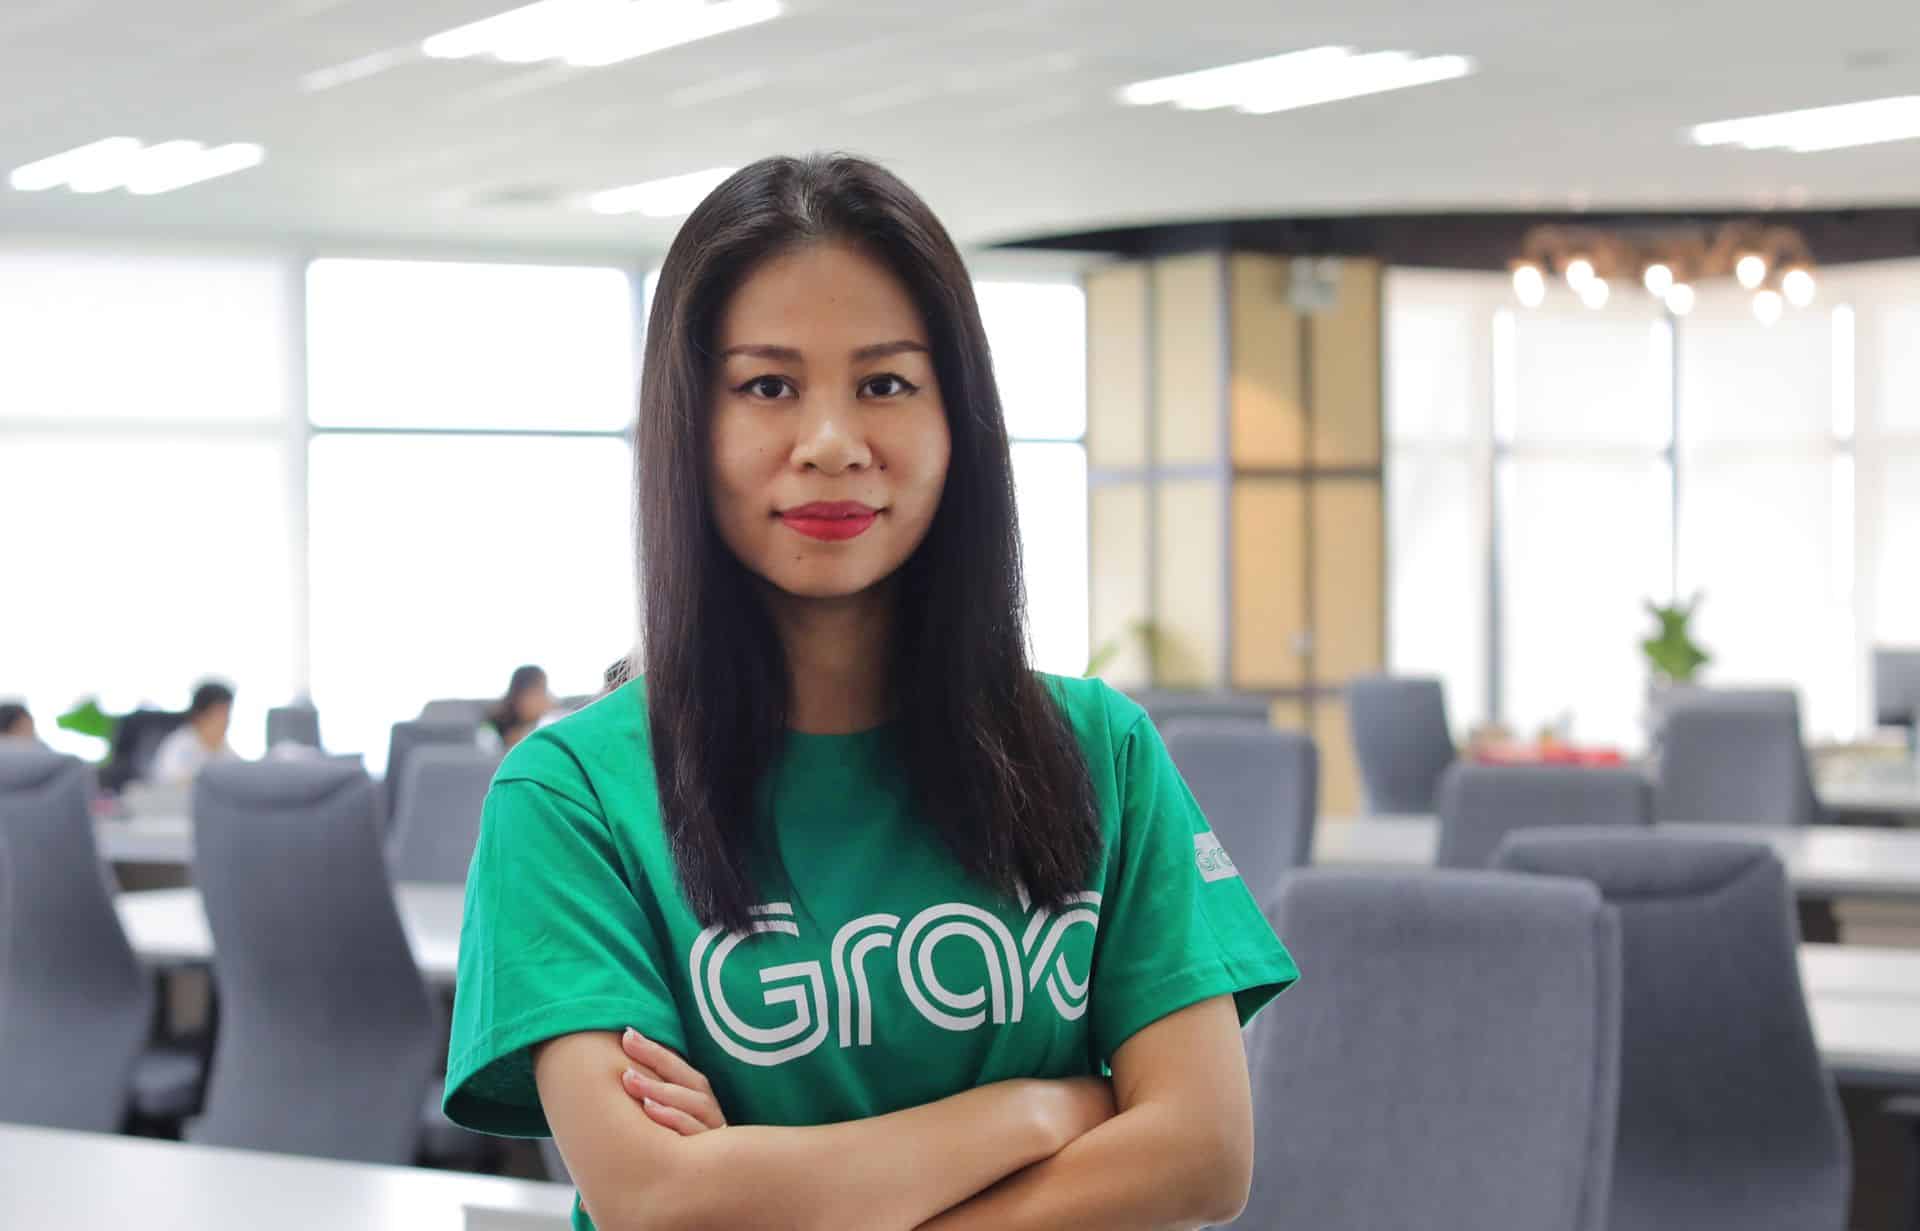 Grab bổ nhiệm bà Nguyễn Thái Hải Vân làm Giám đốc Điều hành của Grab tại  Việt Nam| Grab VN